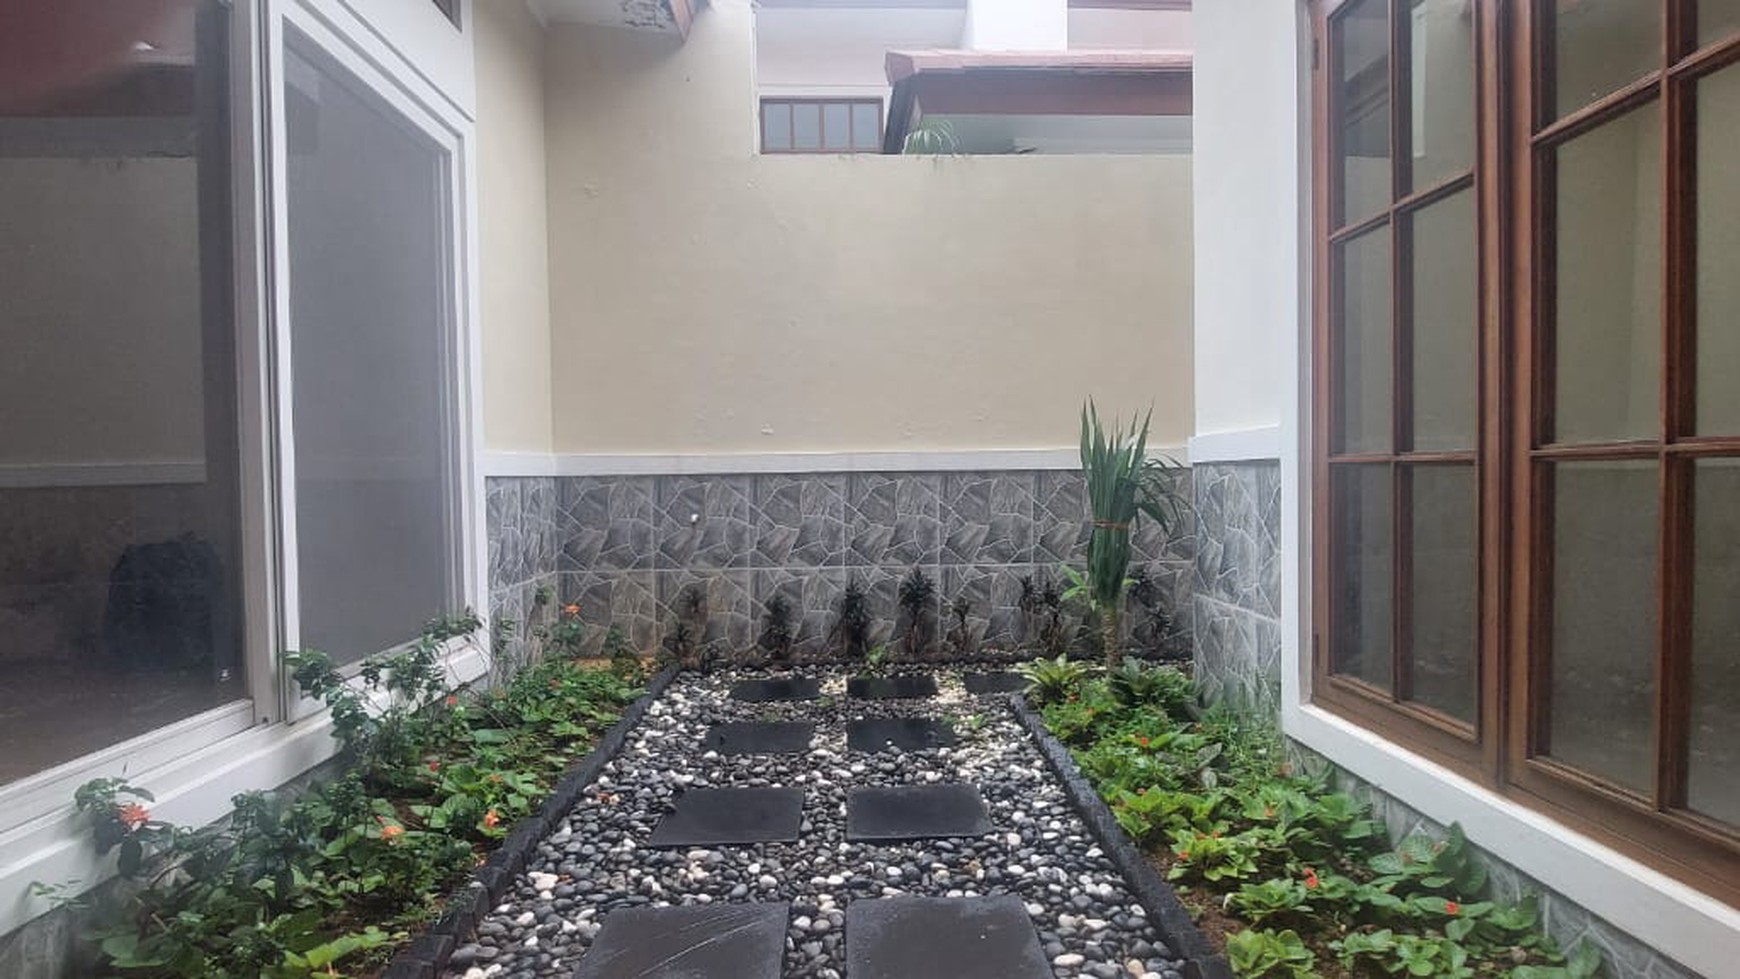 Rumah Bagus, Asri siap lingkungan aman dan nyaman dalam cluster di Bintaro